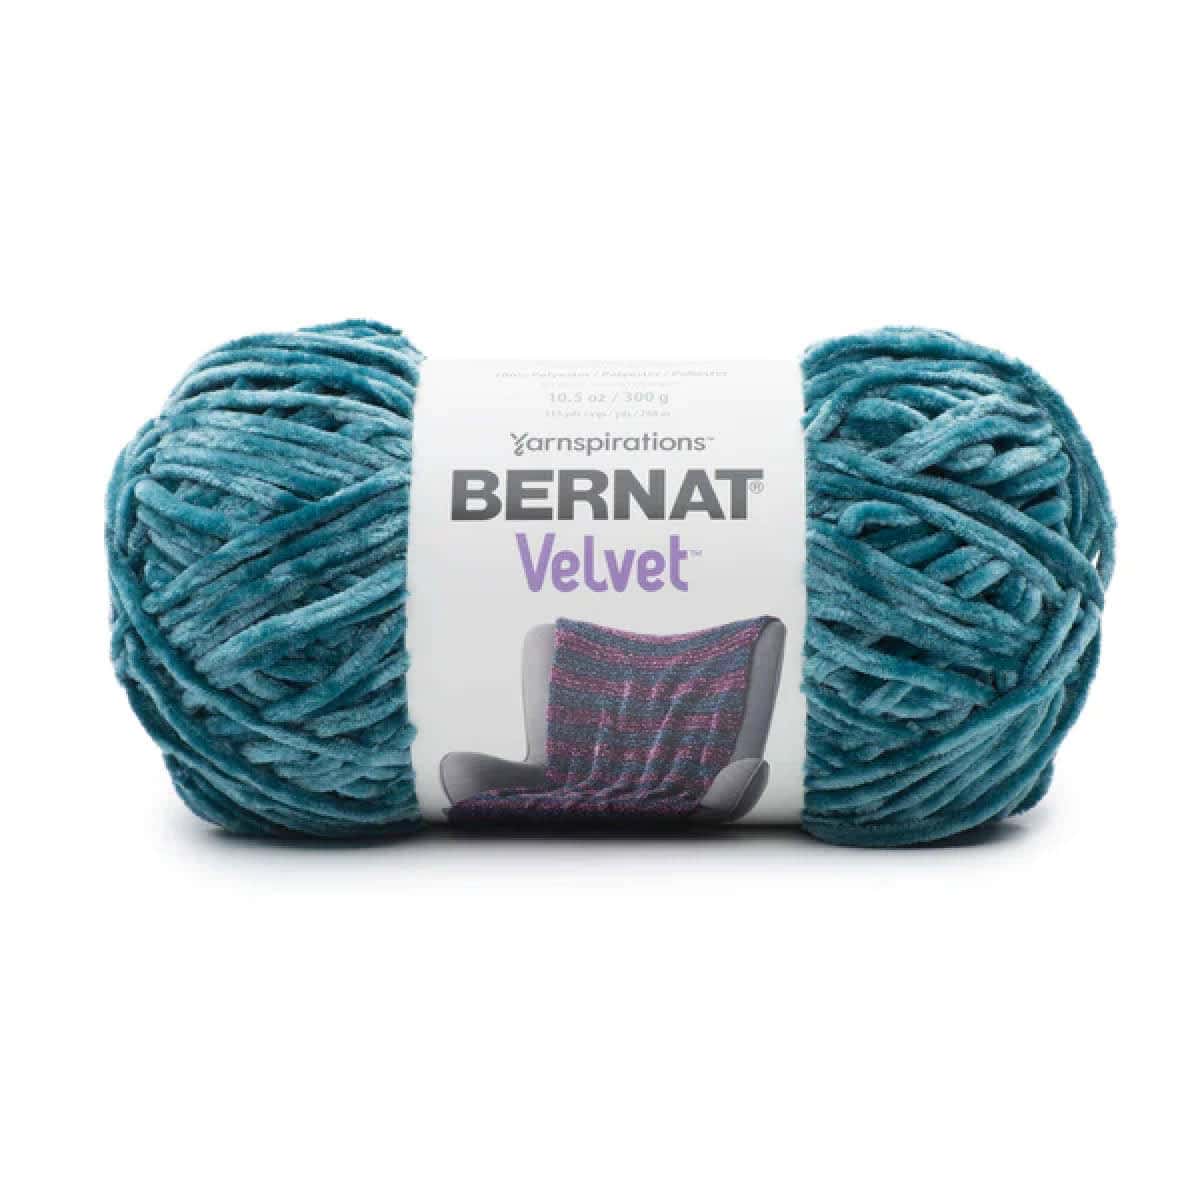 Bernat Velvet Yarn Product